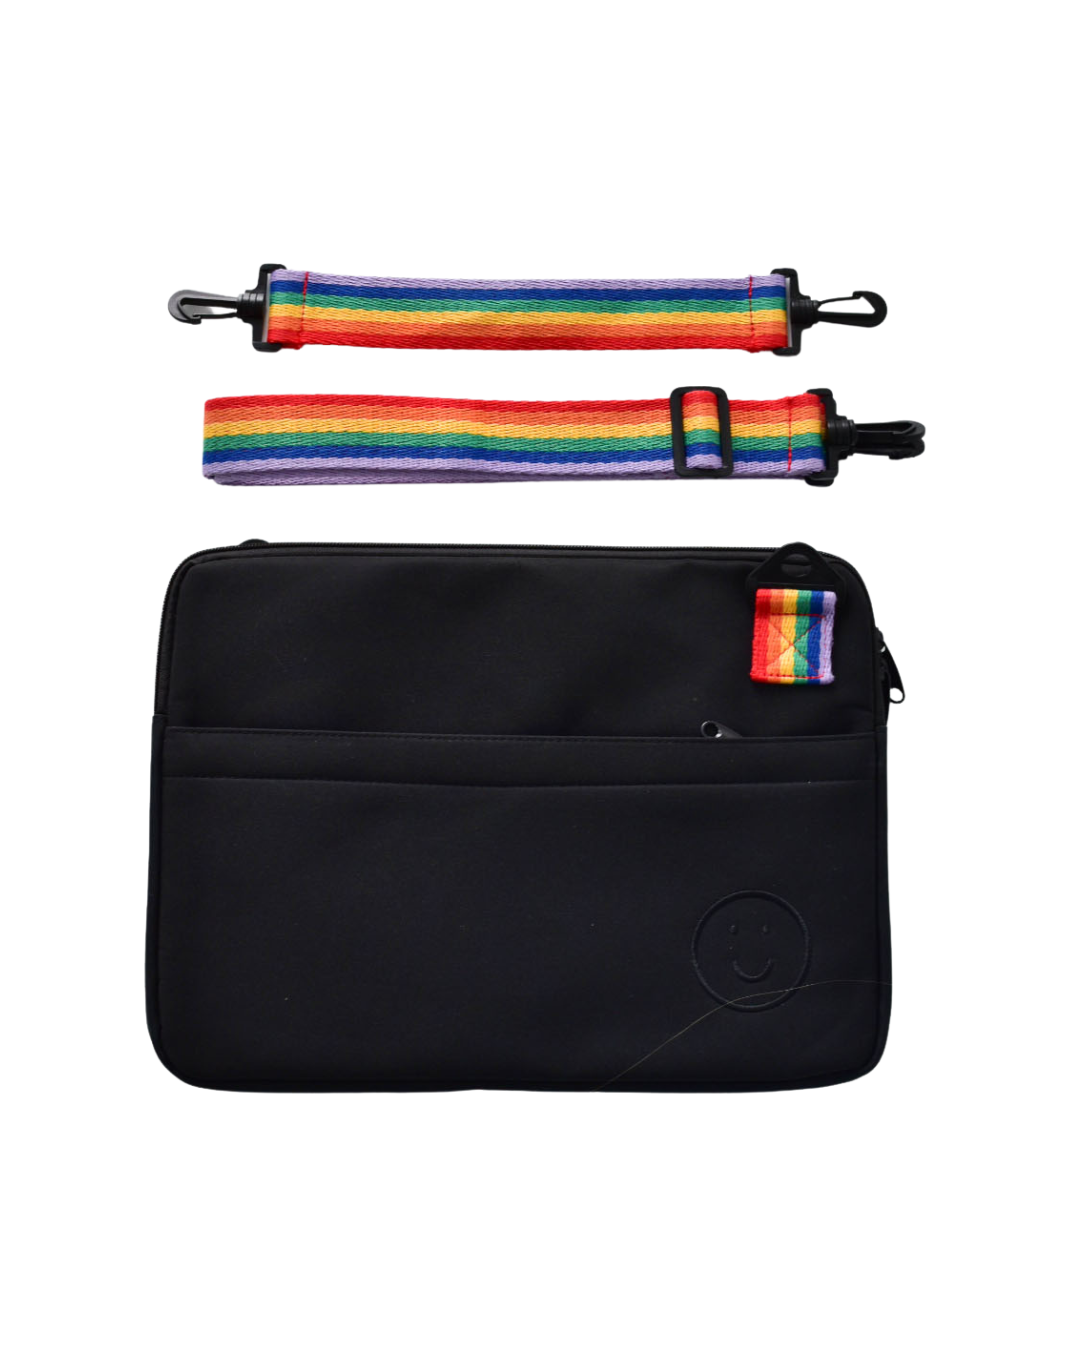 Signature Laptop Bag in Rainbow Black